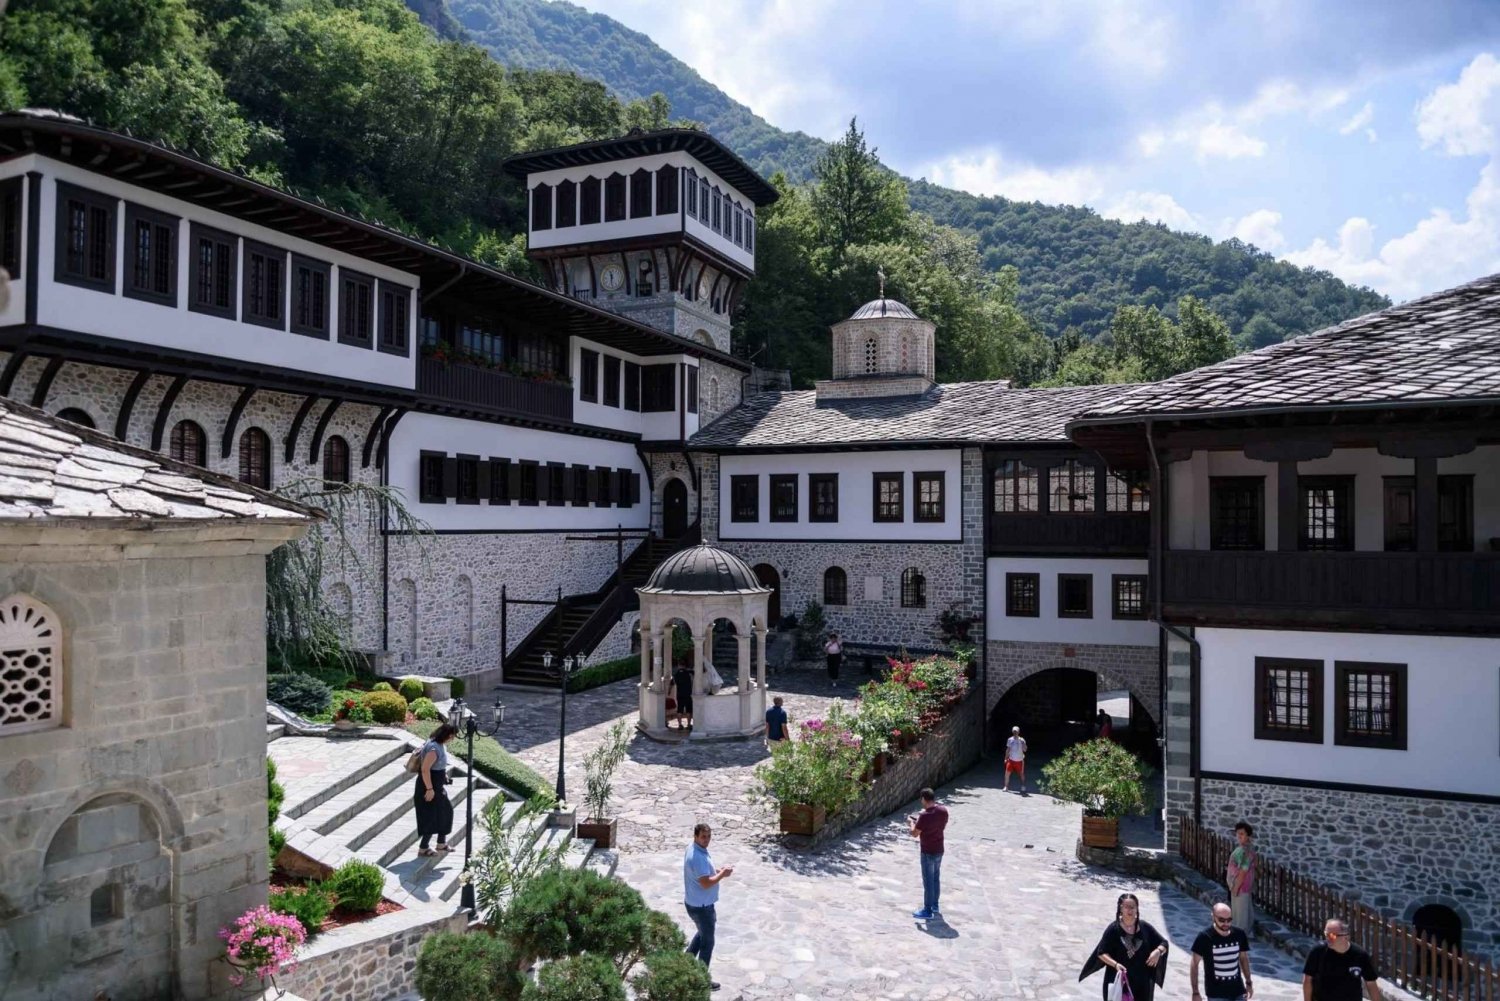 Bigorski-klosteret og Duff-fossene fra Ohrid